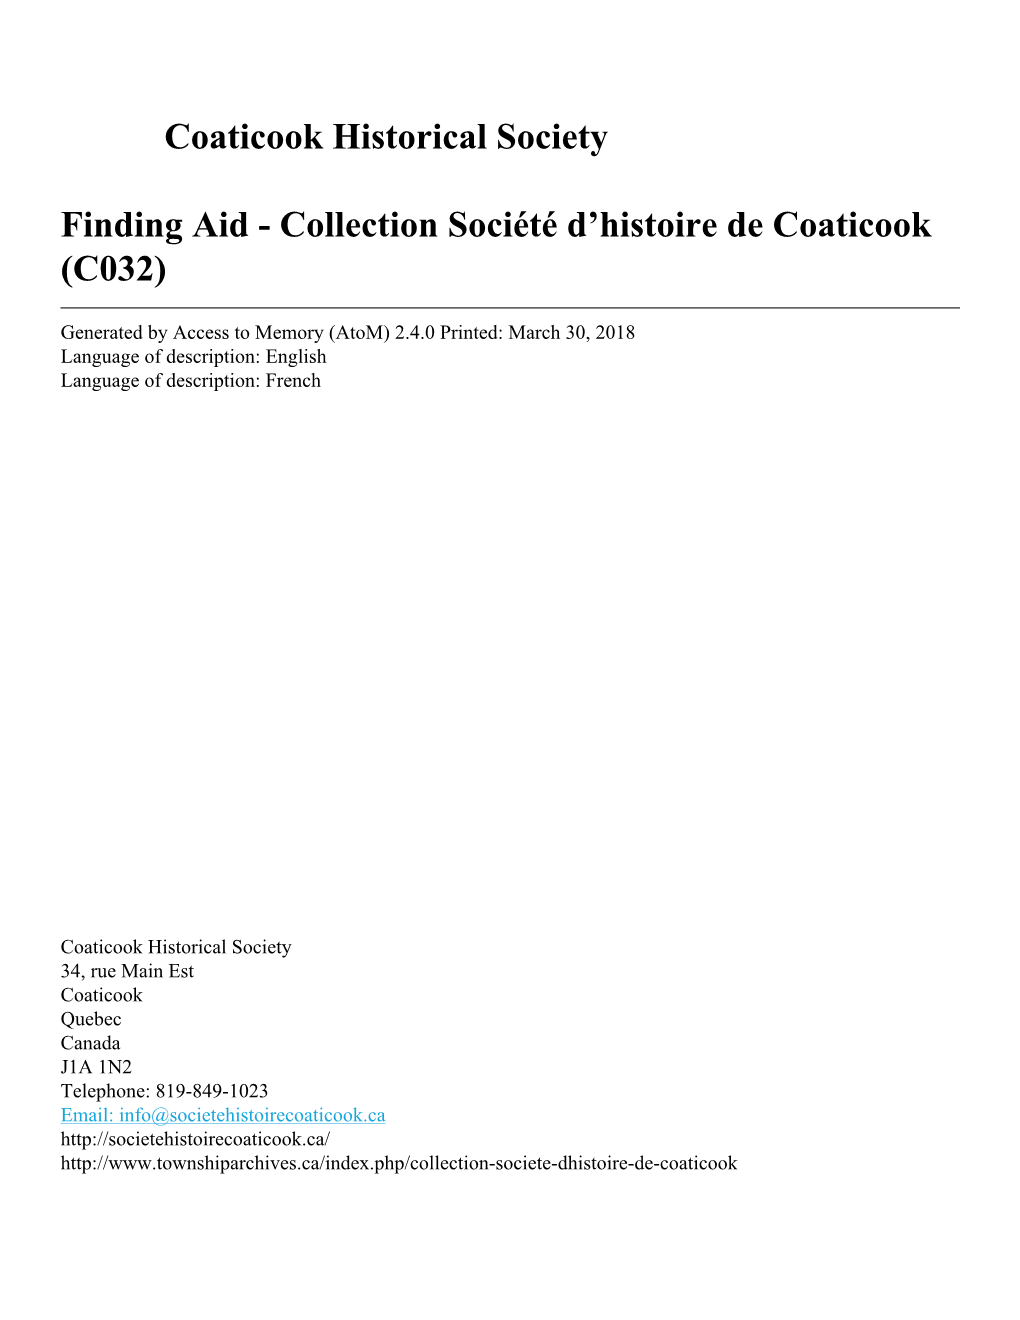 Collection Société D'histoire De Coaticook